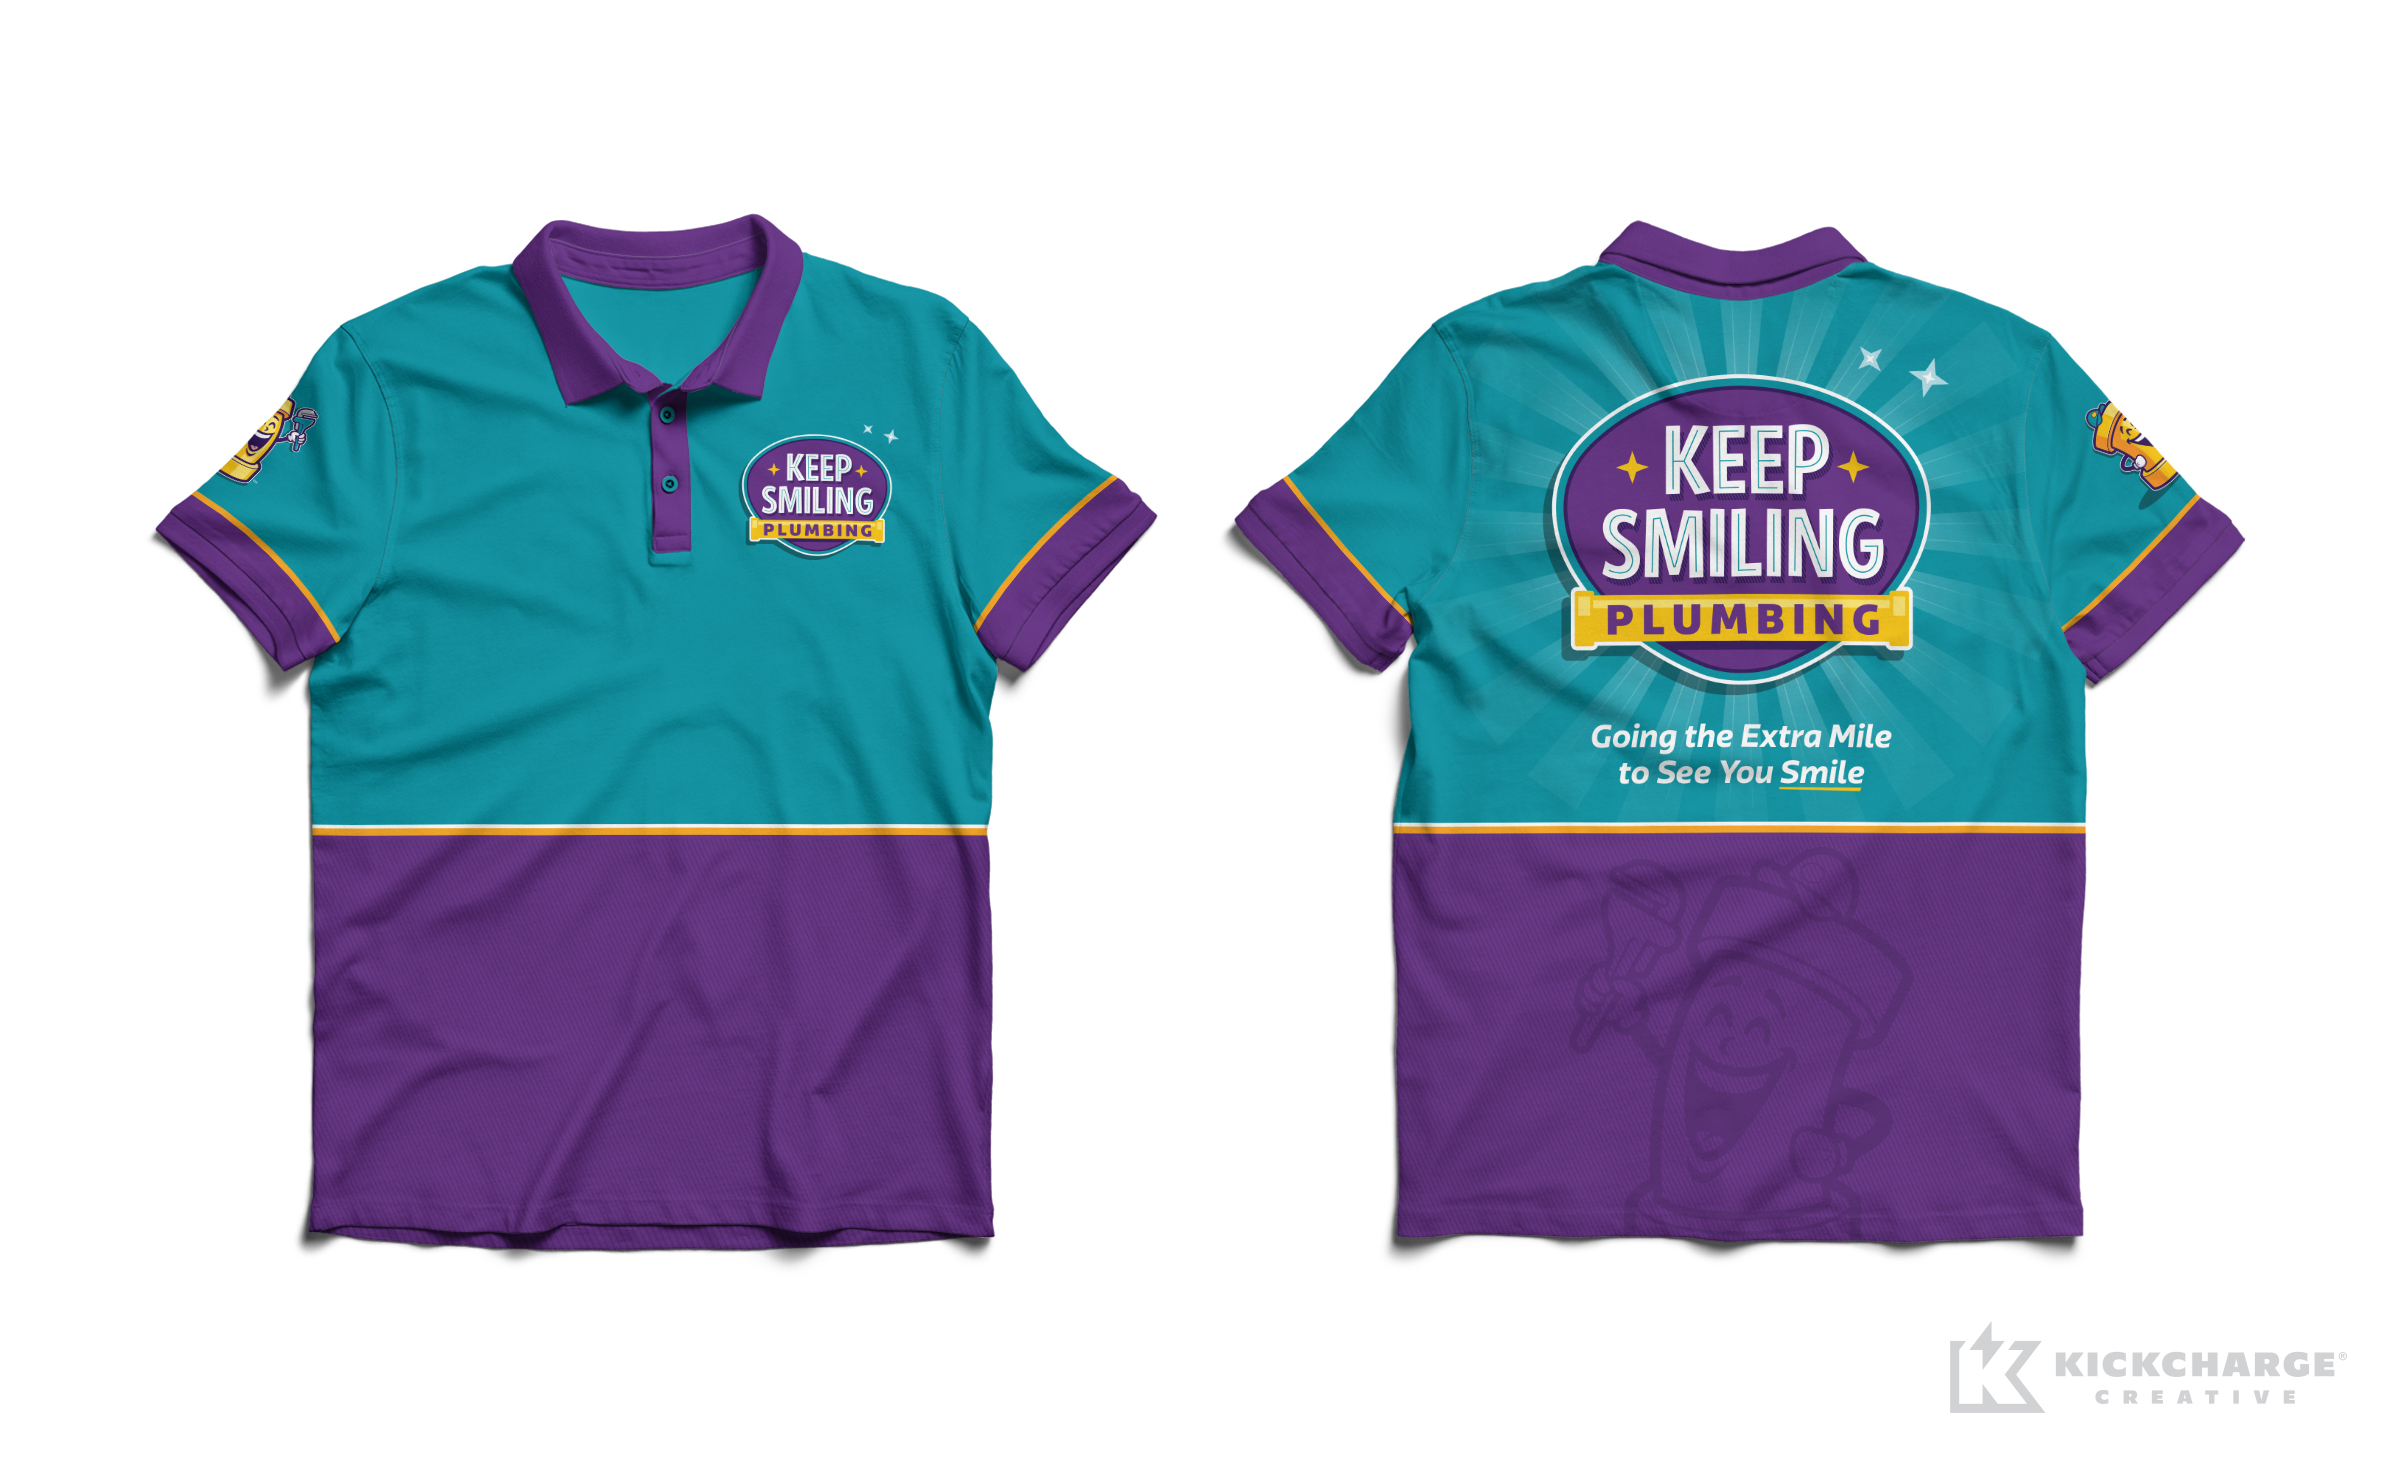 plumbing uniforms for Keep Smiling Plumbing